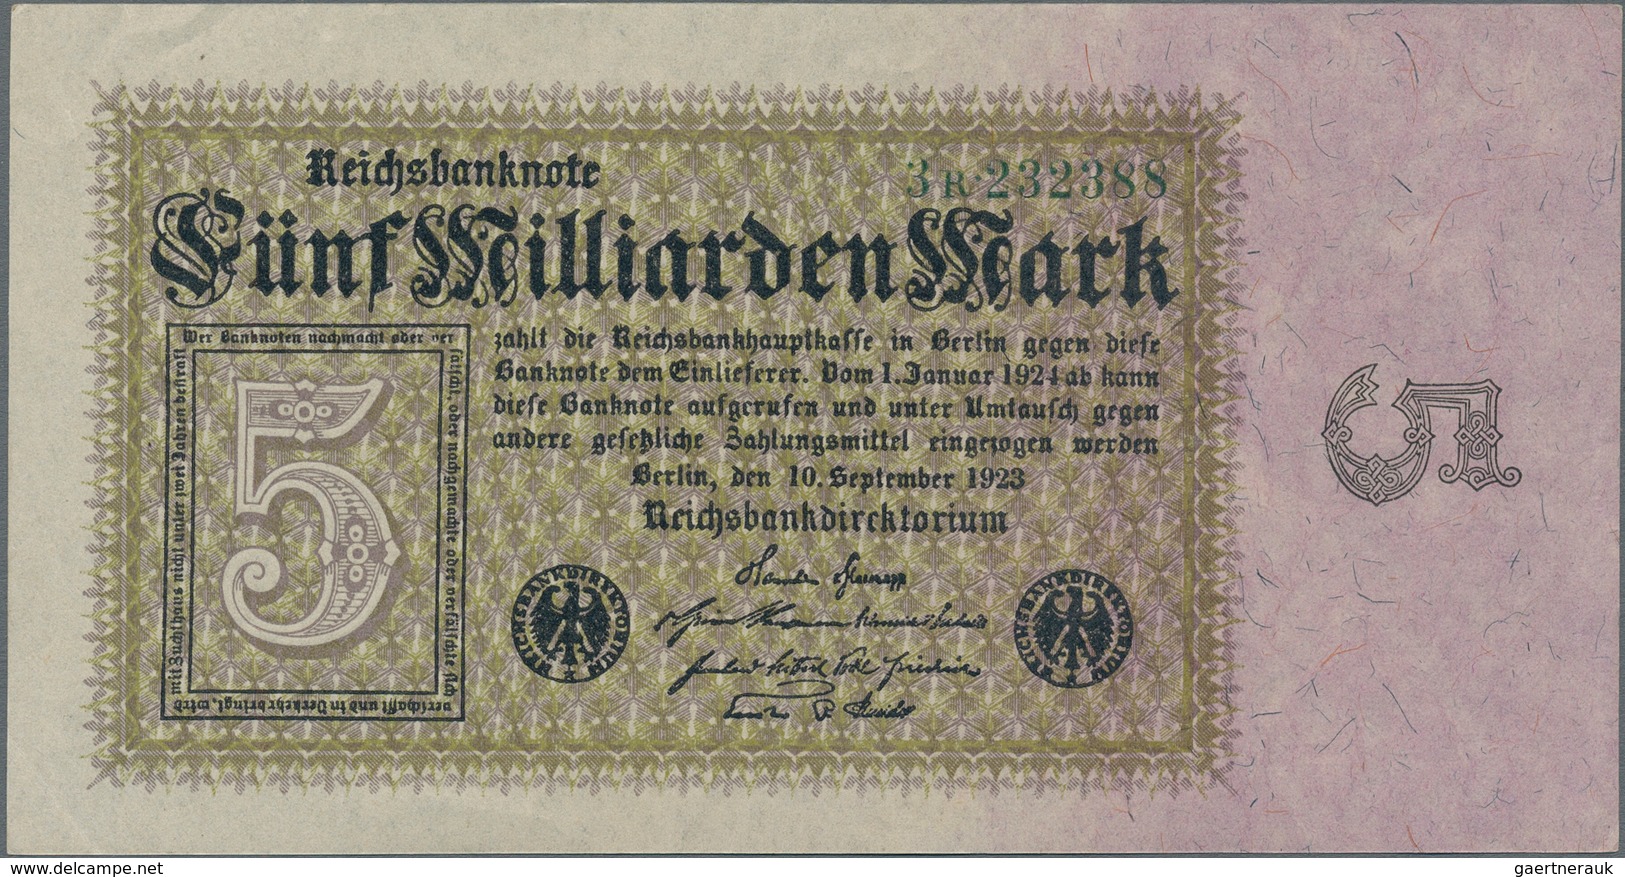 Deutschland - Deutsches Reich bis 1945: Mappe mit mehr als 180 Banknoten Deutsches Reich bis zur Hoc